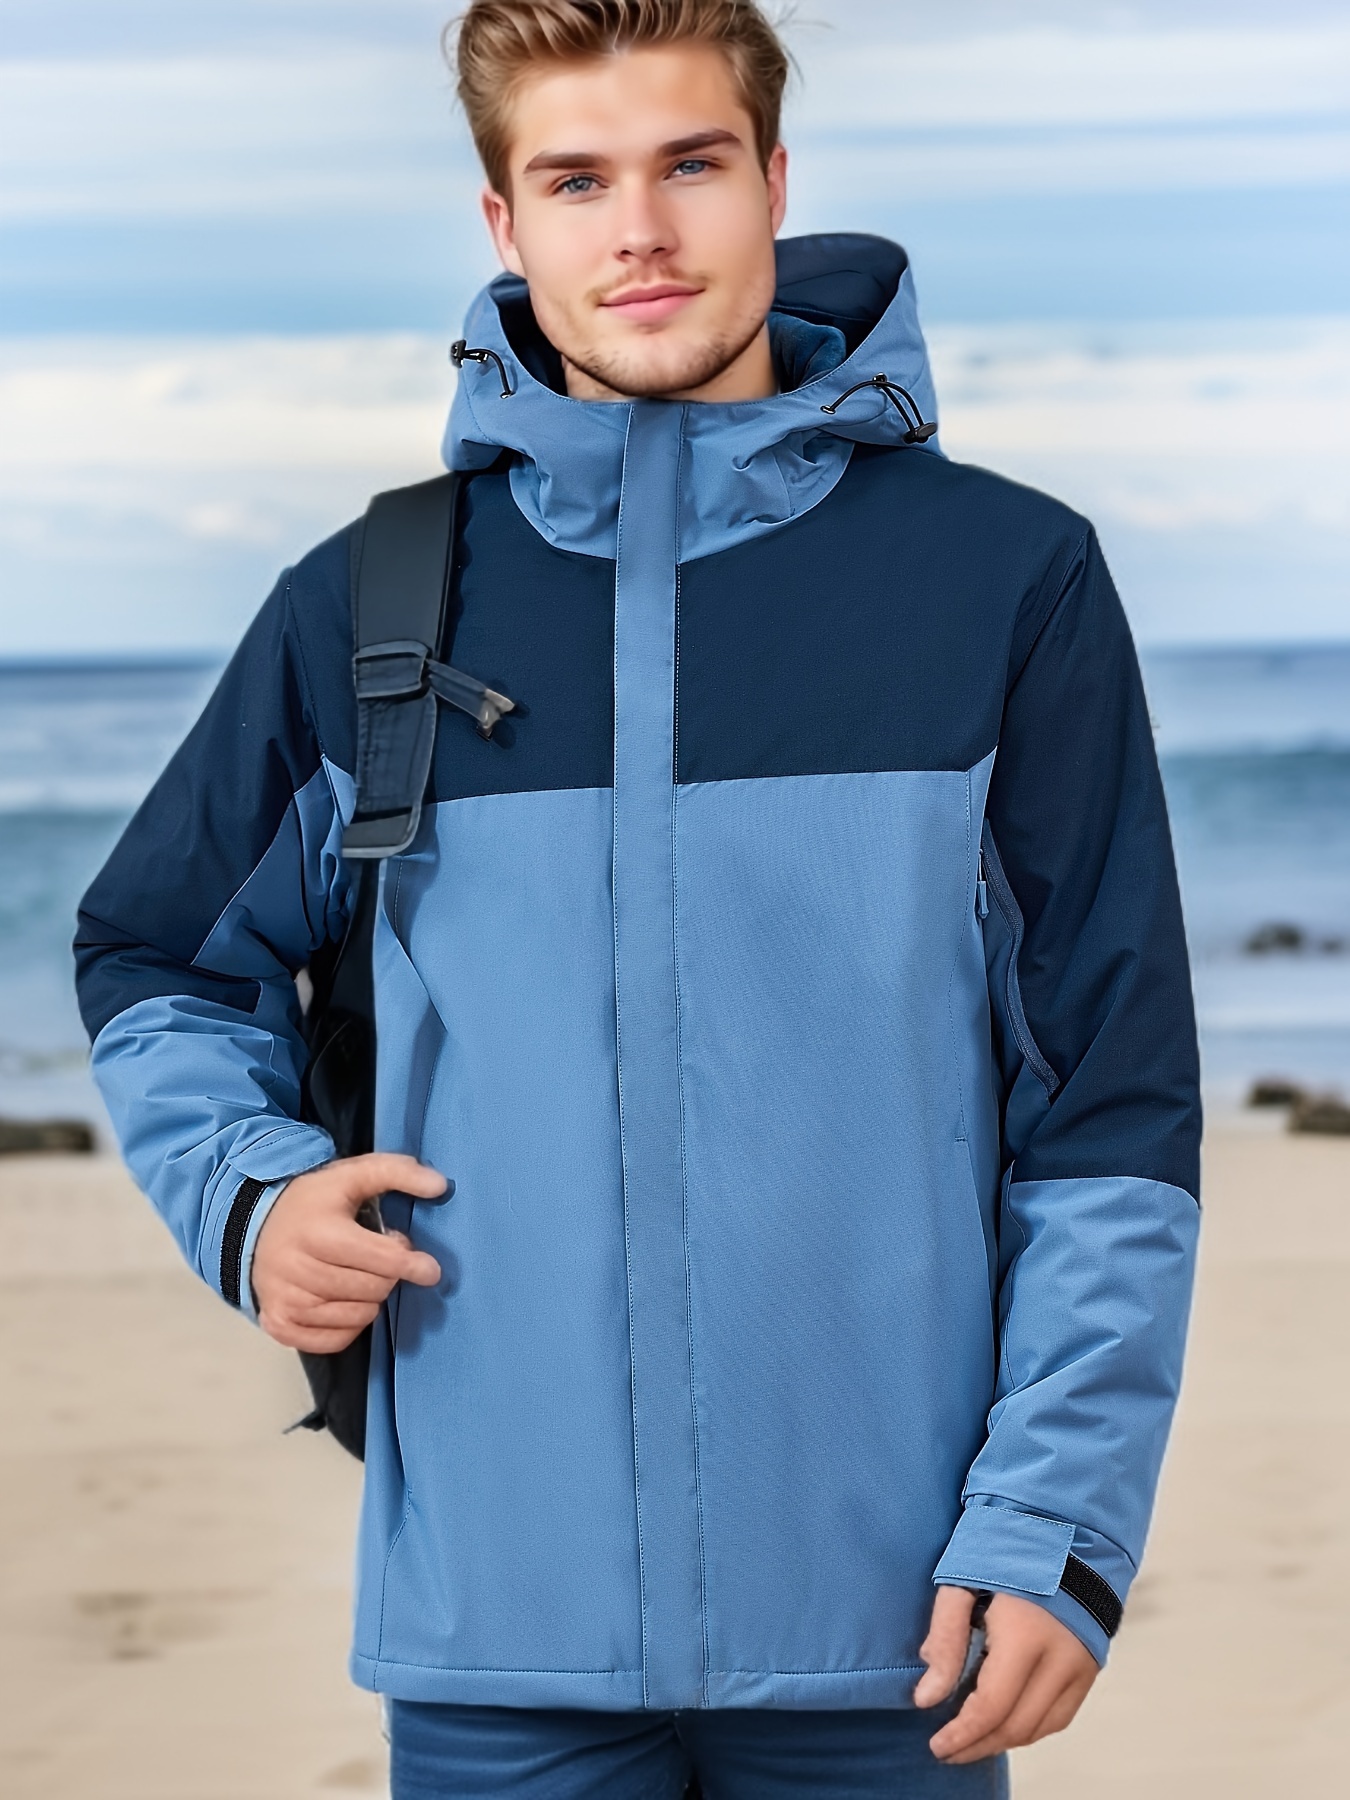 Hiking Jacket Men Waterproof Windbreaker Winter Warm Hooded Coats